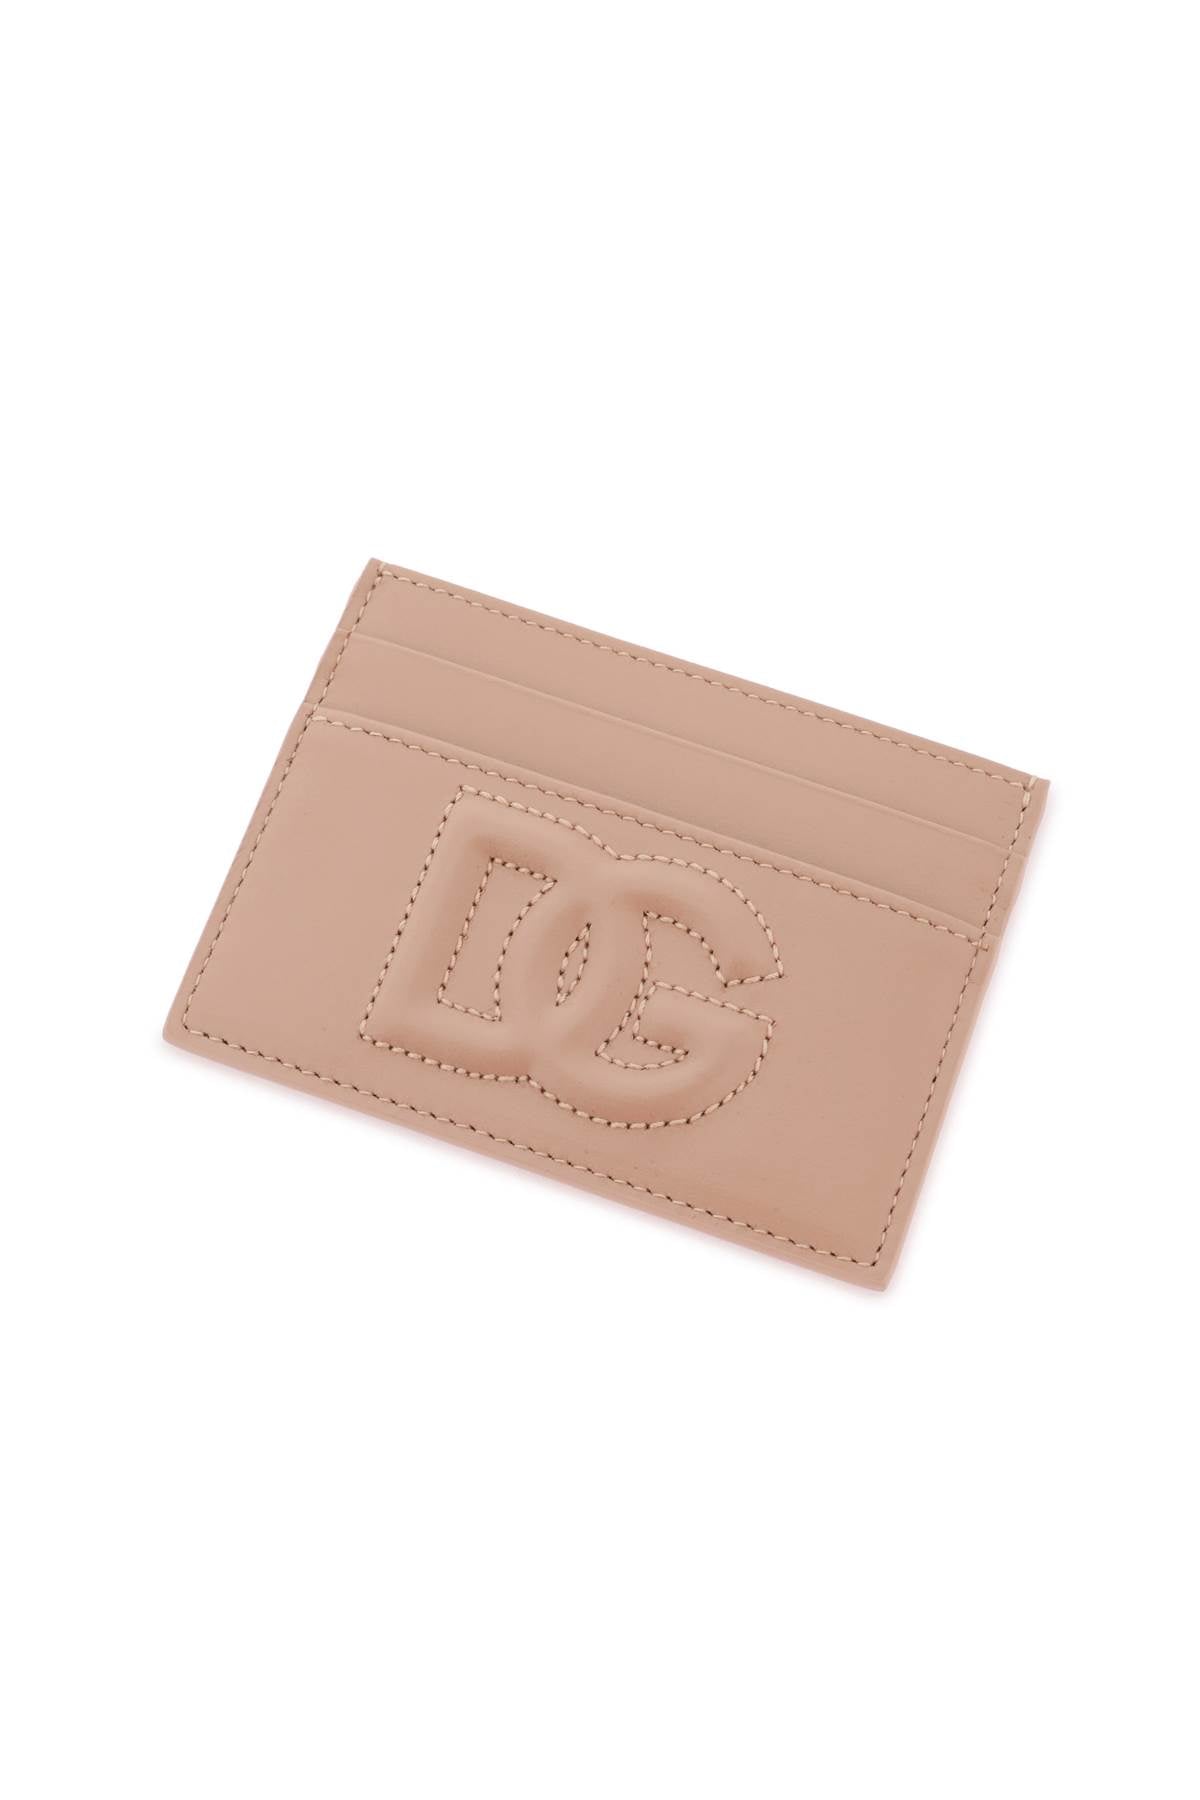 Dolce & Gabbana Dolce & gabbana dg logo cardholder